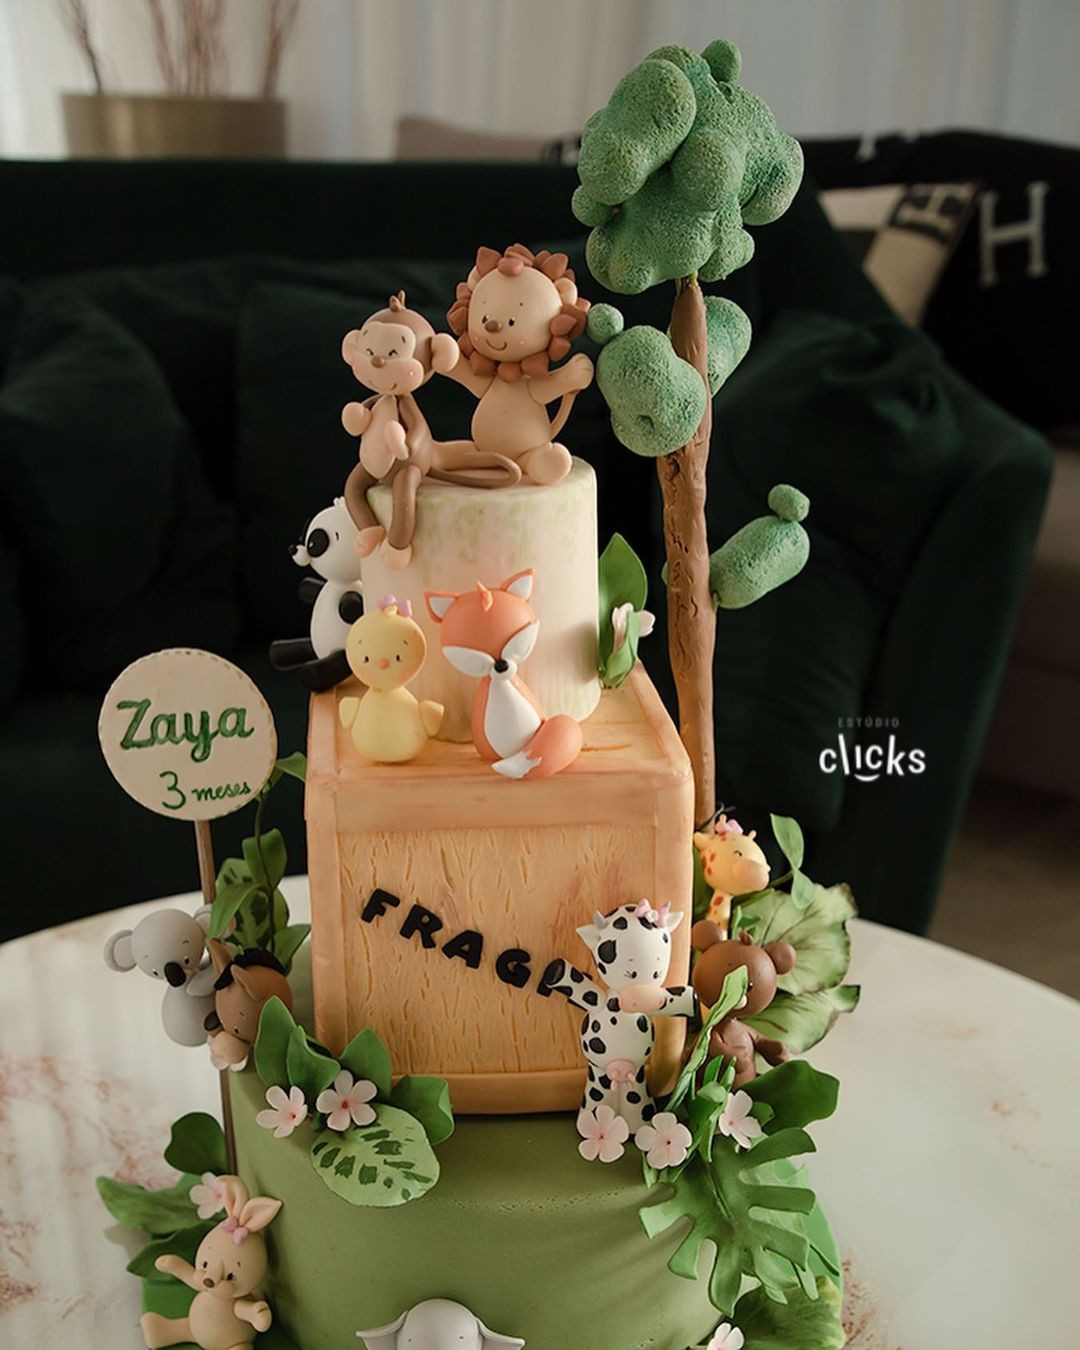 O bolo de mesversário de Zaya (Foto: Reprodução Instagram)